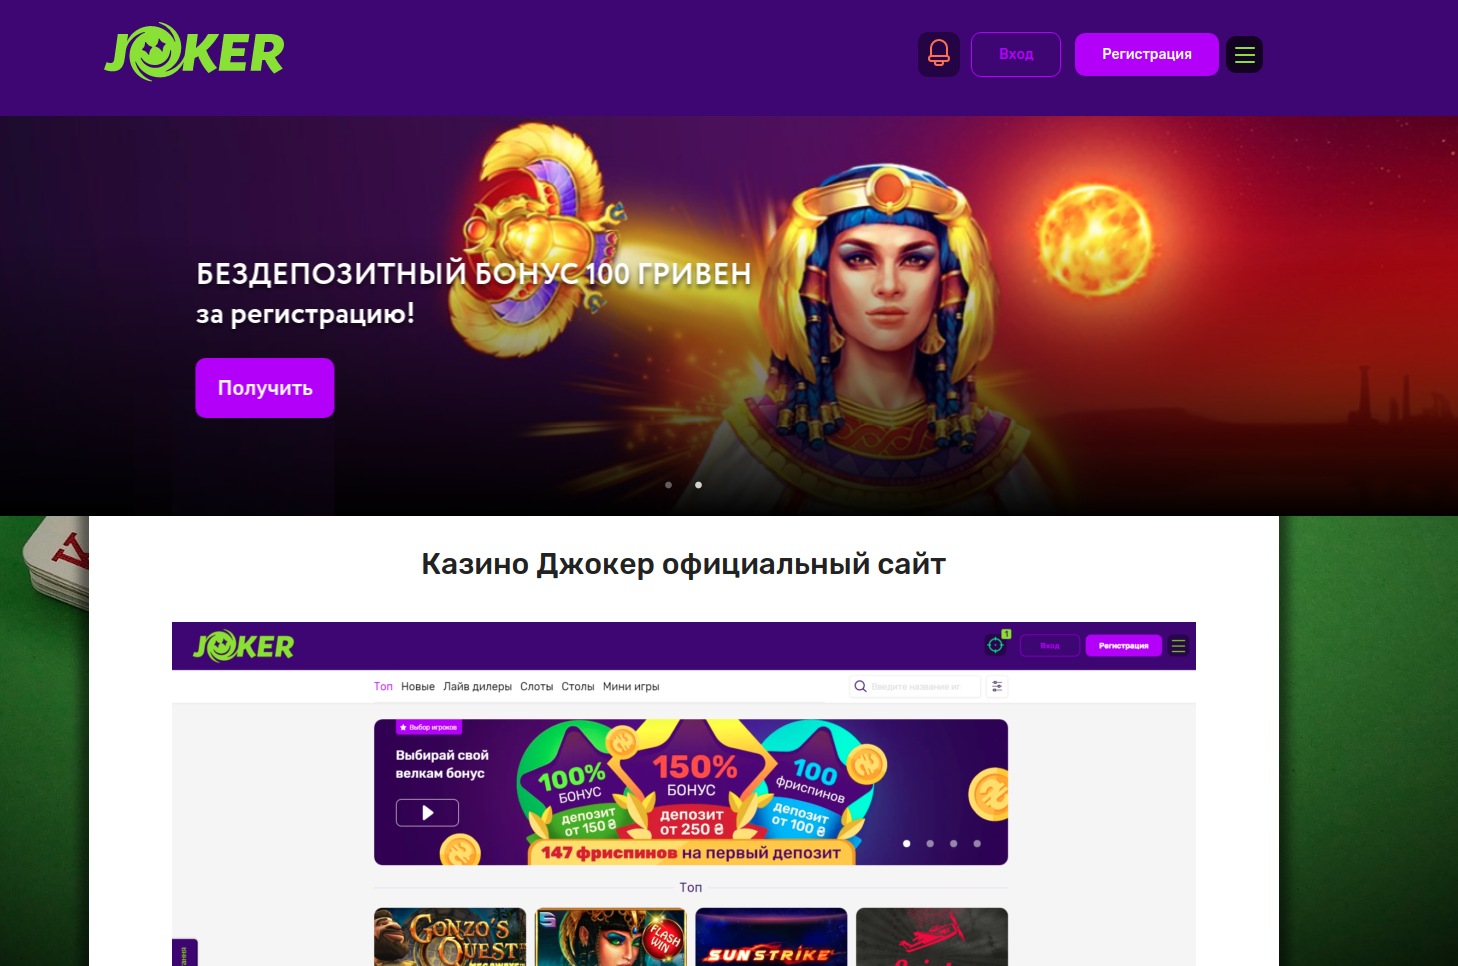 Джокер казино Украина официальный сайт Joker casino